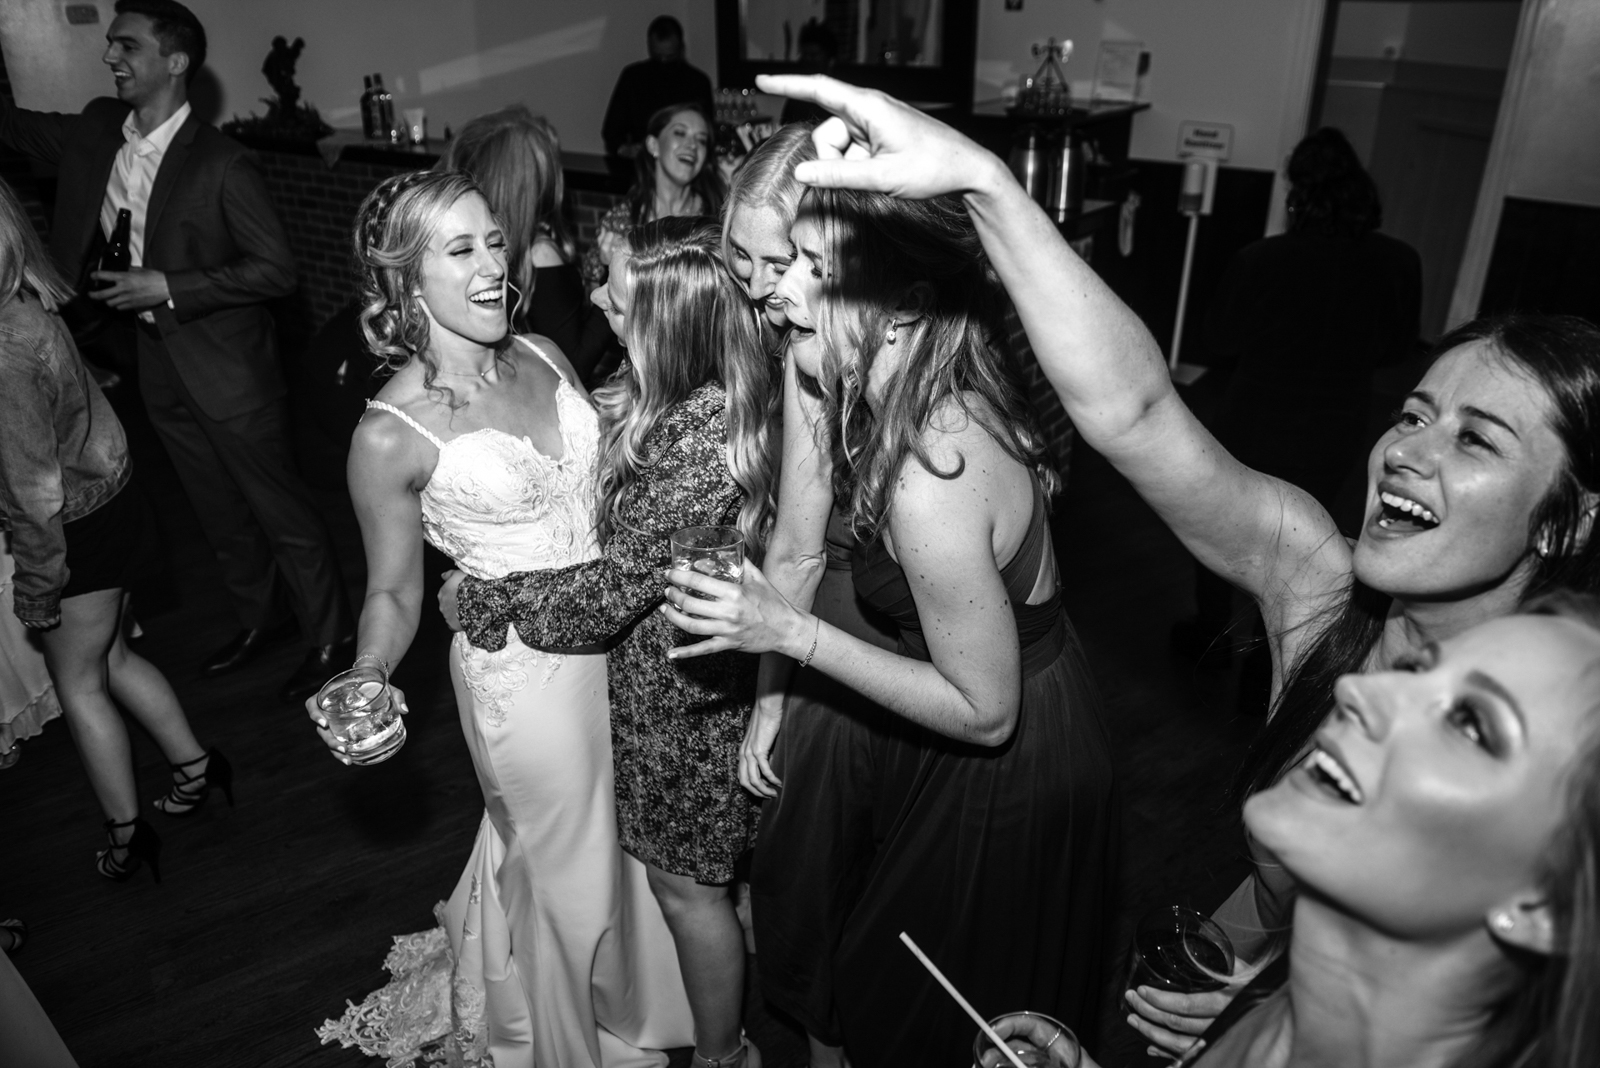 the bride is enjoying her dancing